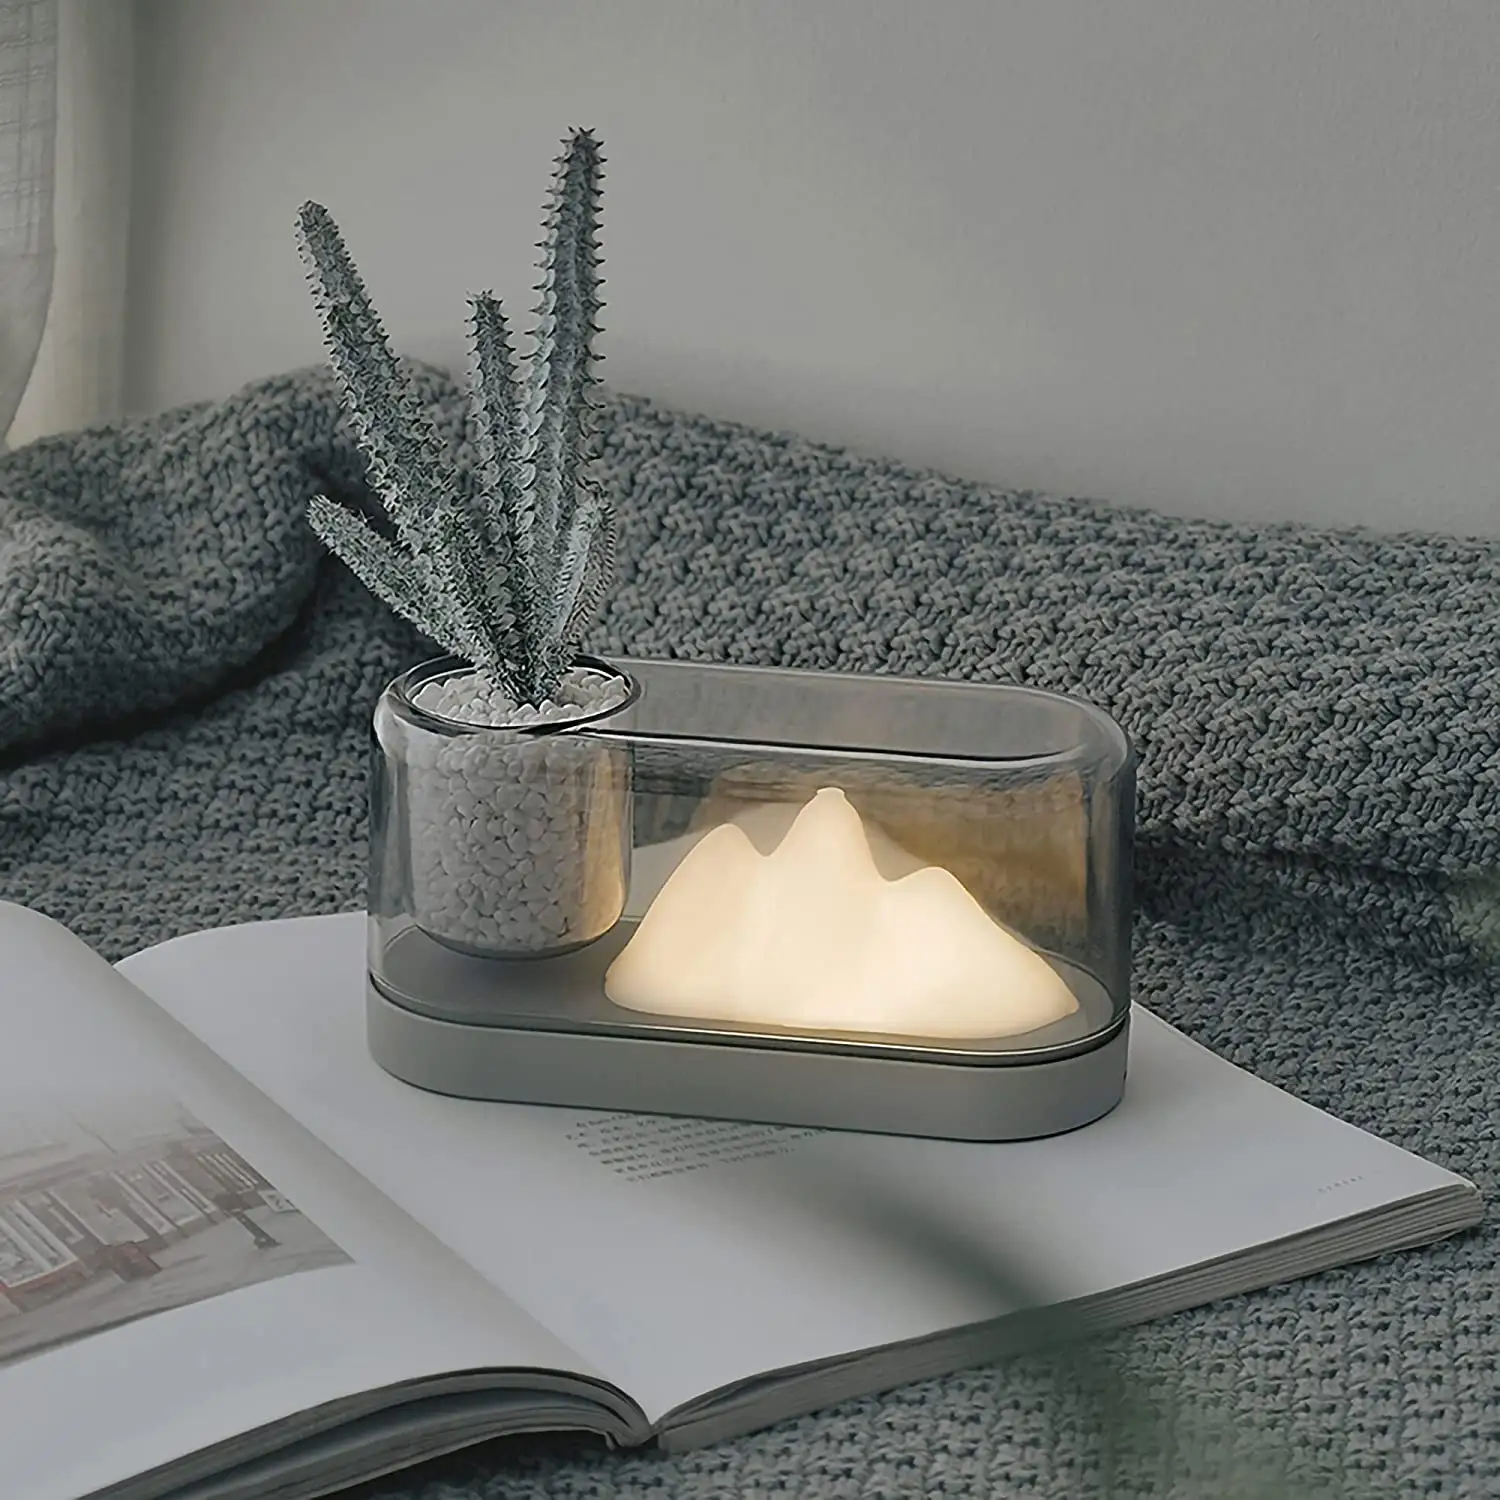 산 테이블 램프 데스크탑 독서 작은 밤 usb 충전 밤 침대 옆 램프 크리 에이 티브 LED 맞춤형 선물 램프